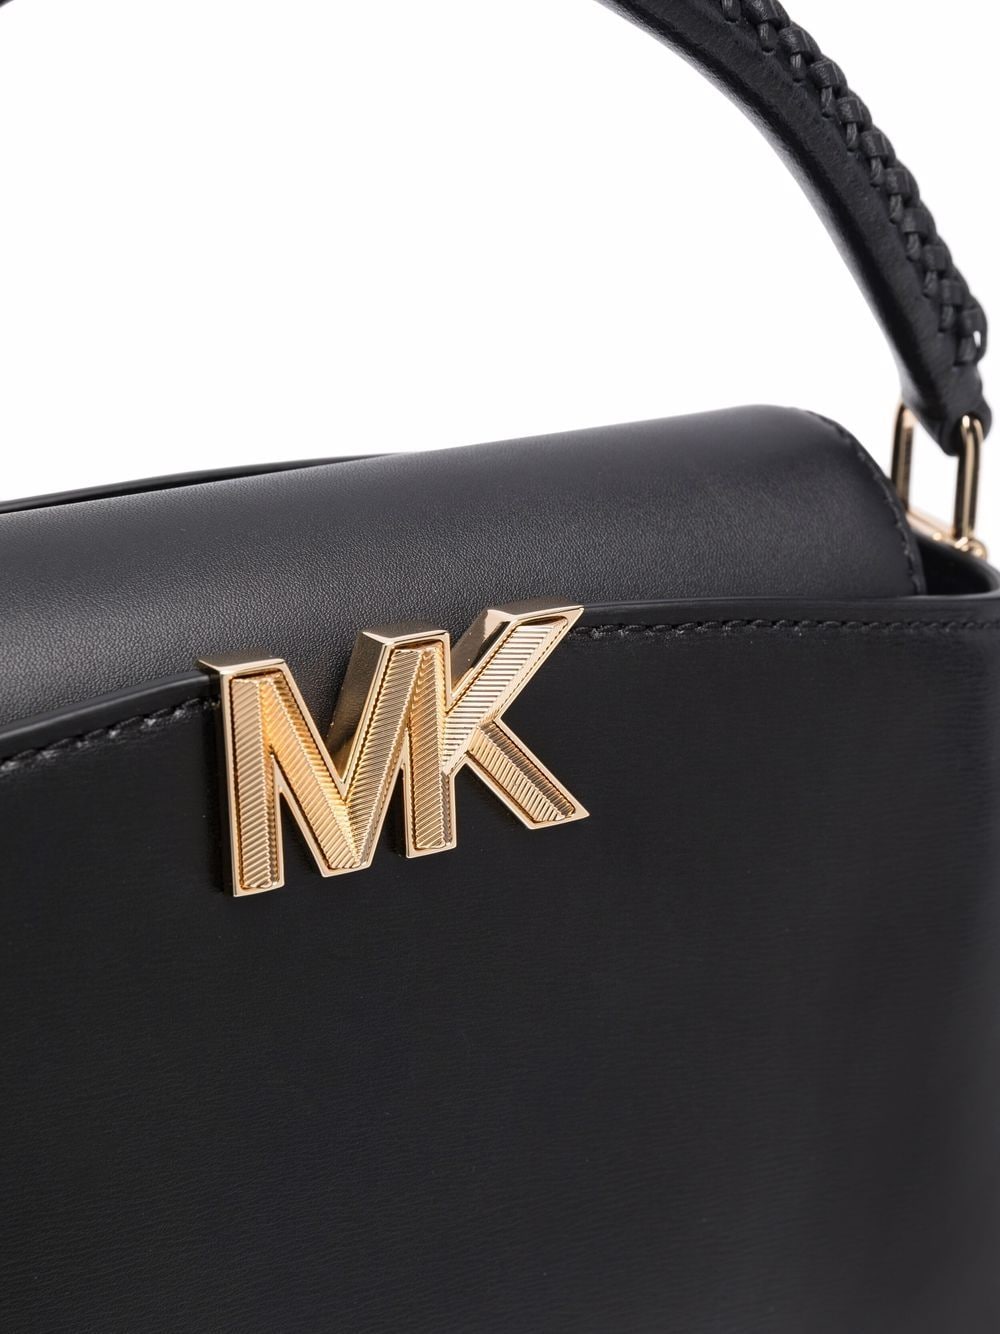 Michael Kors Karlie Small Studded Logo Crossbody/Shoulder/Handbag